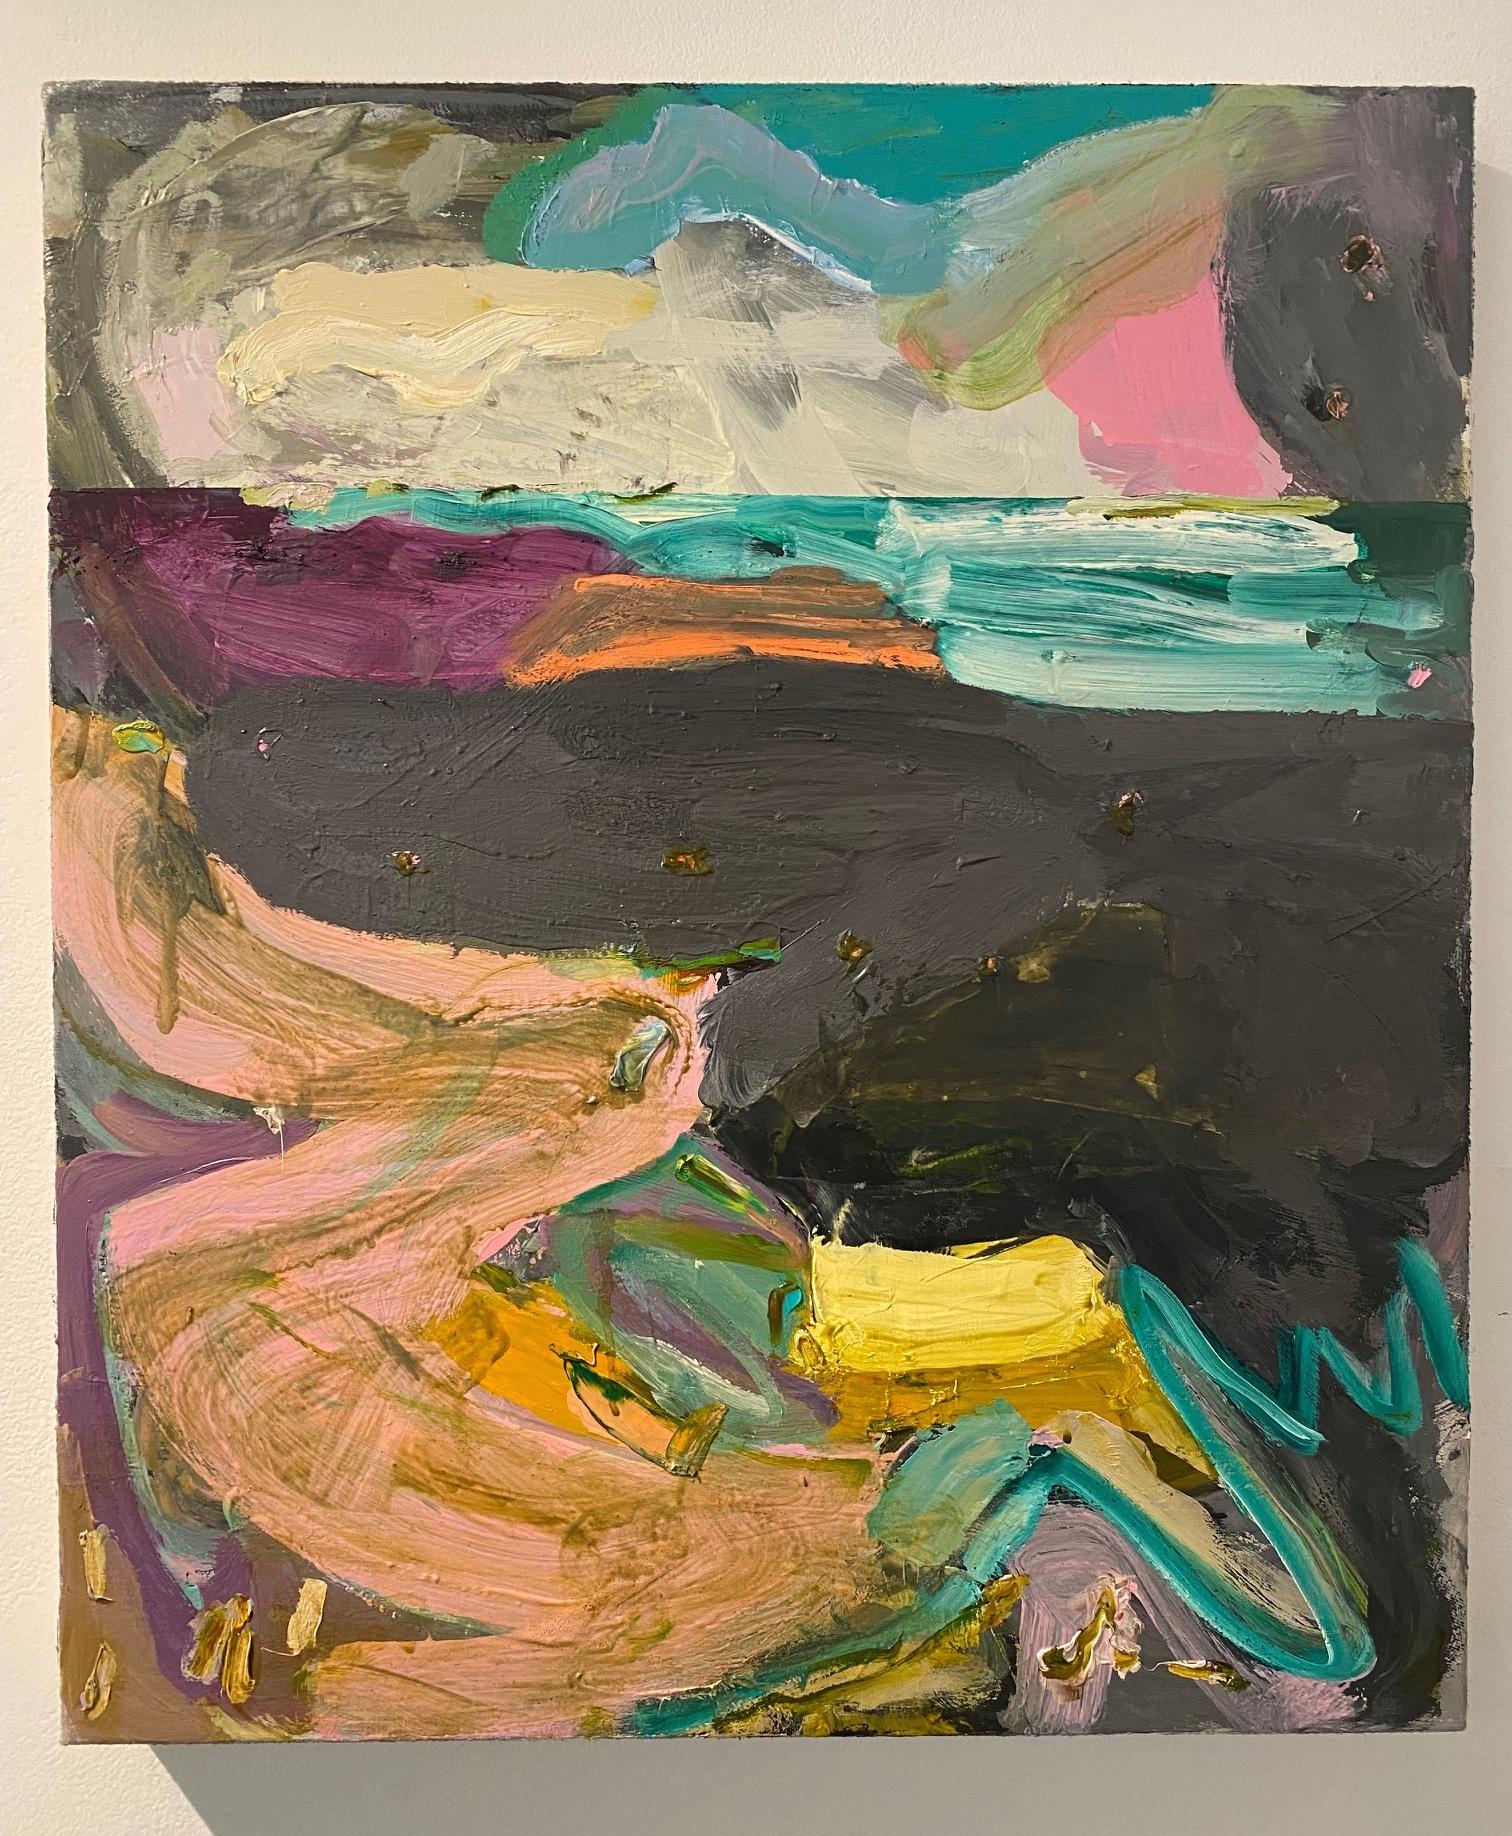 « Main Landscape - Low Tide, », huile sur toile - peinture abstraite - Painting de Alfredo Gisholt